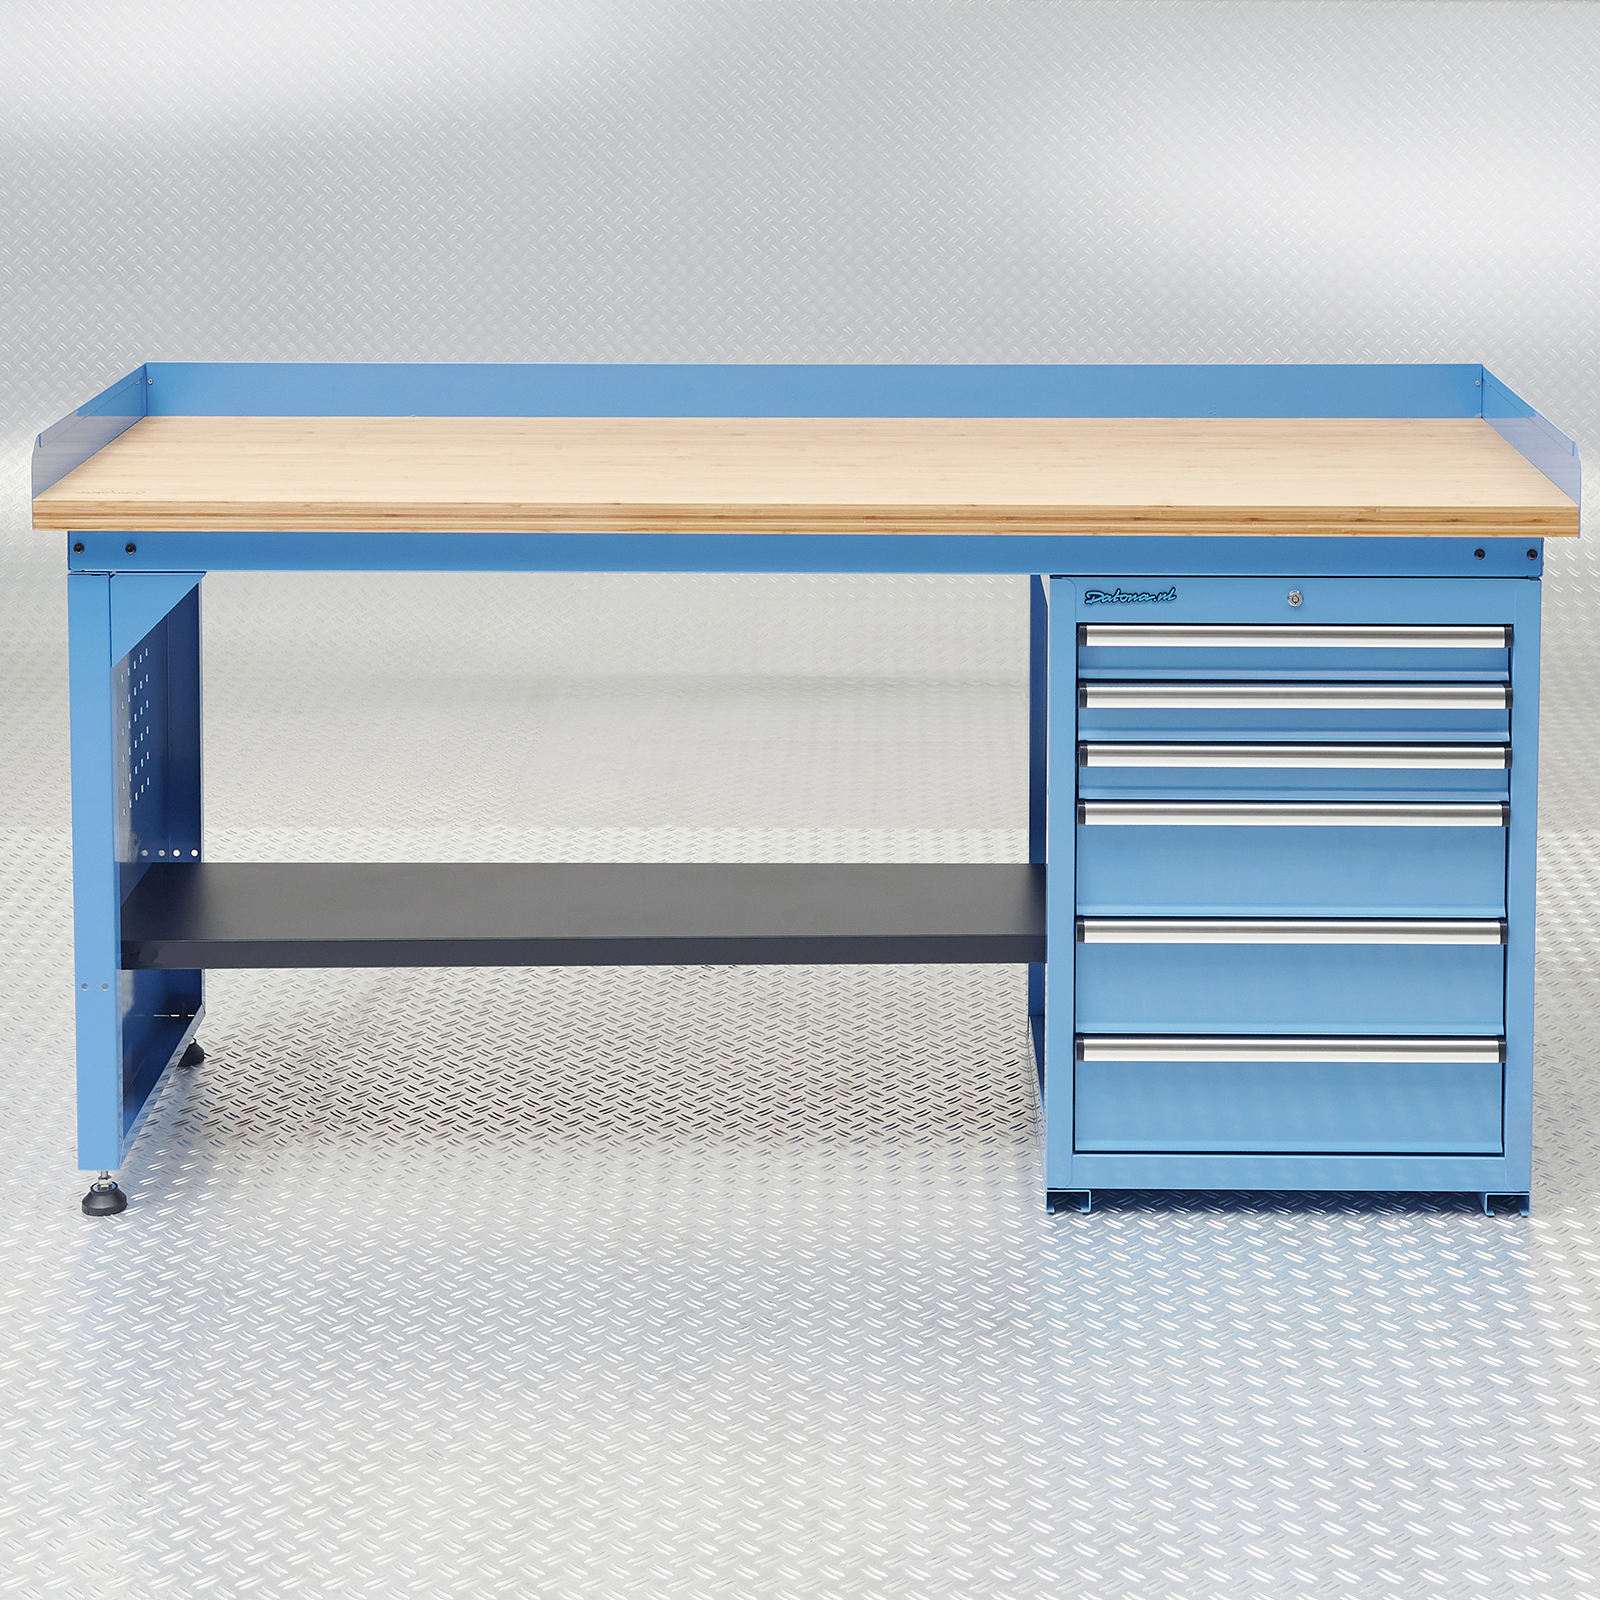 Etabli bois 1500 - Etablis et tables - L'atelier modulaire des